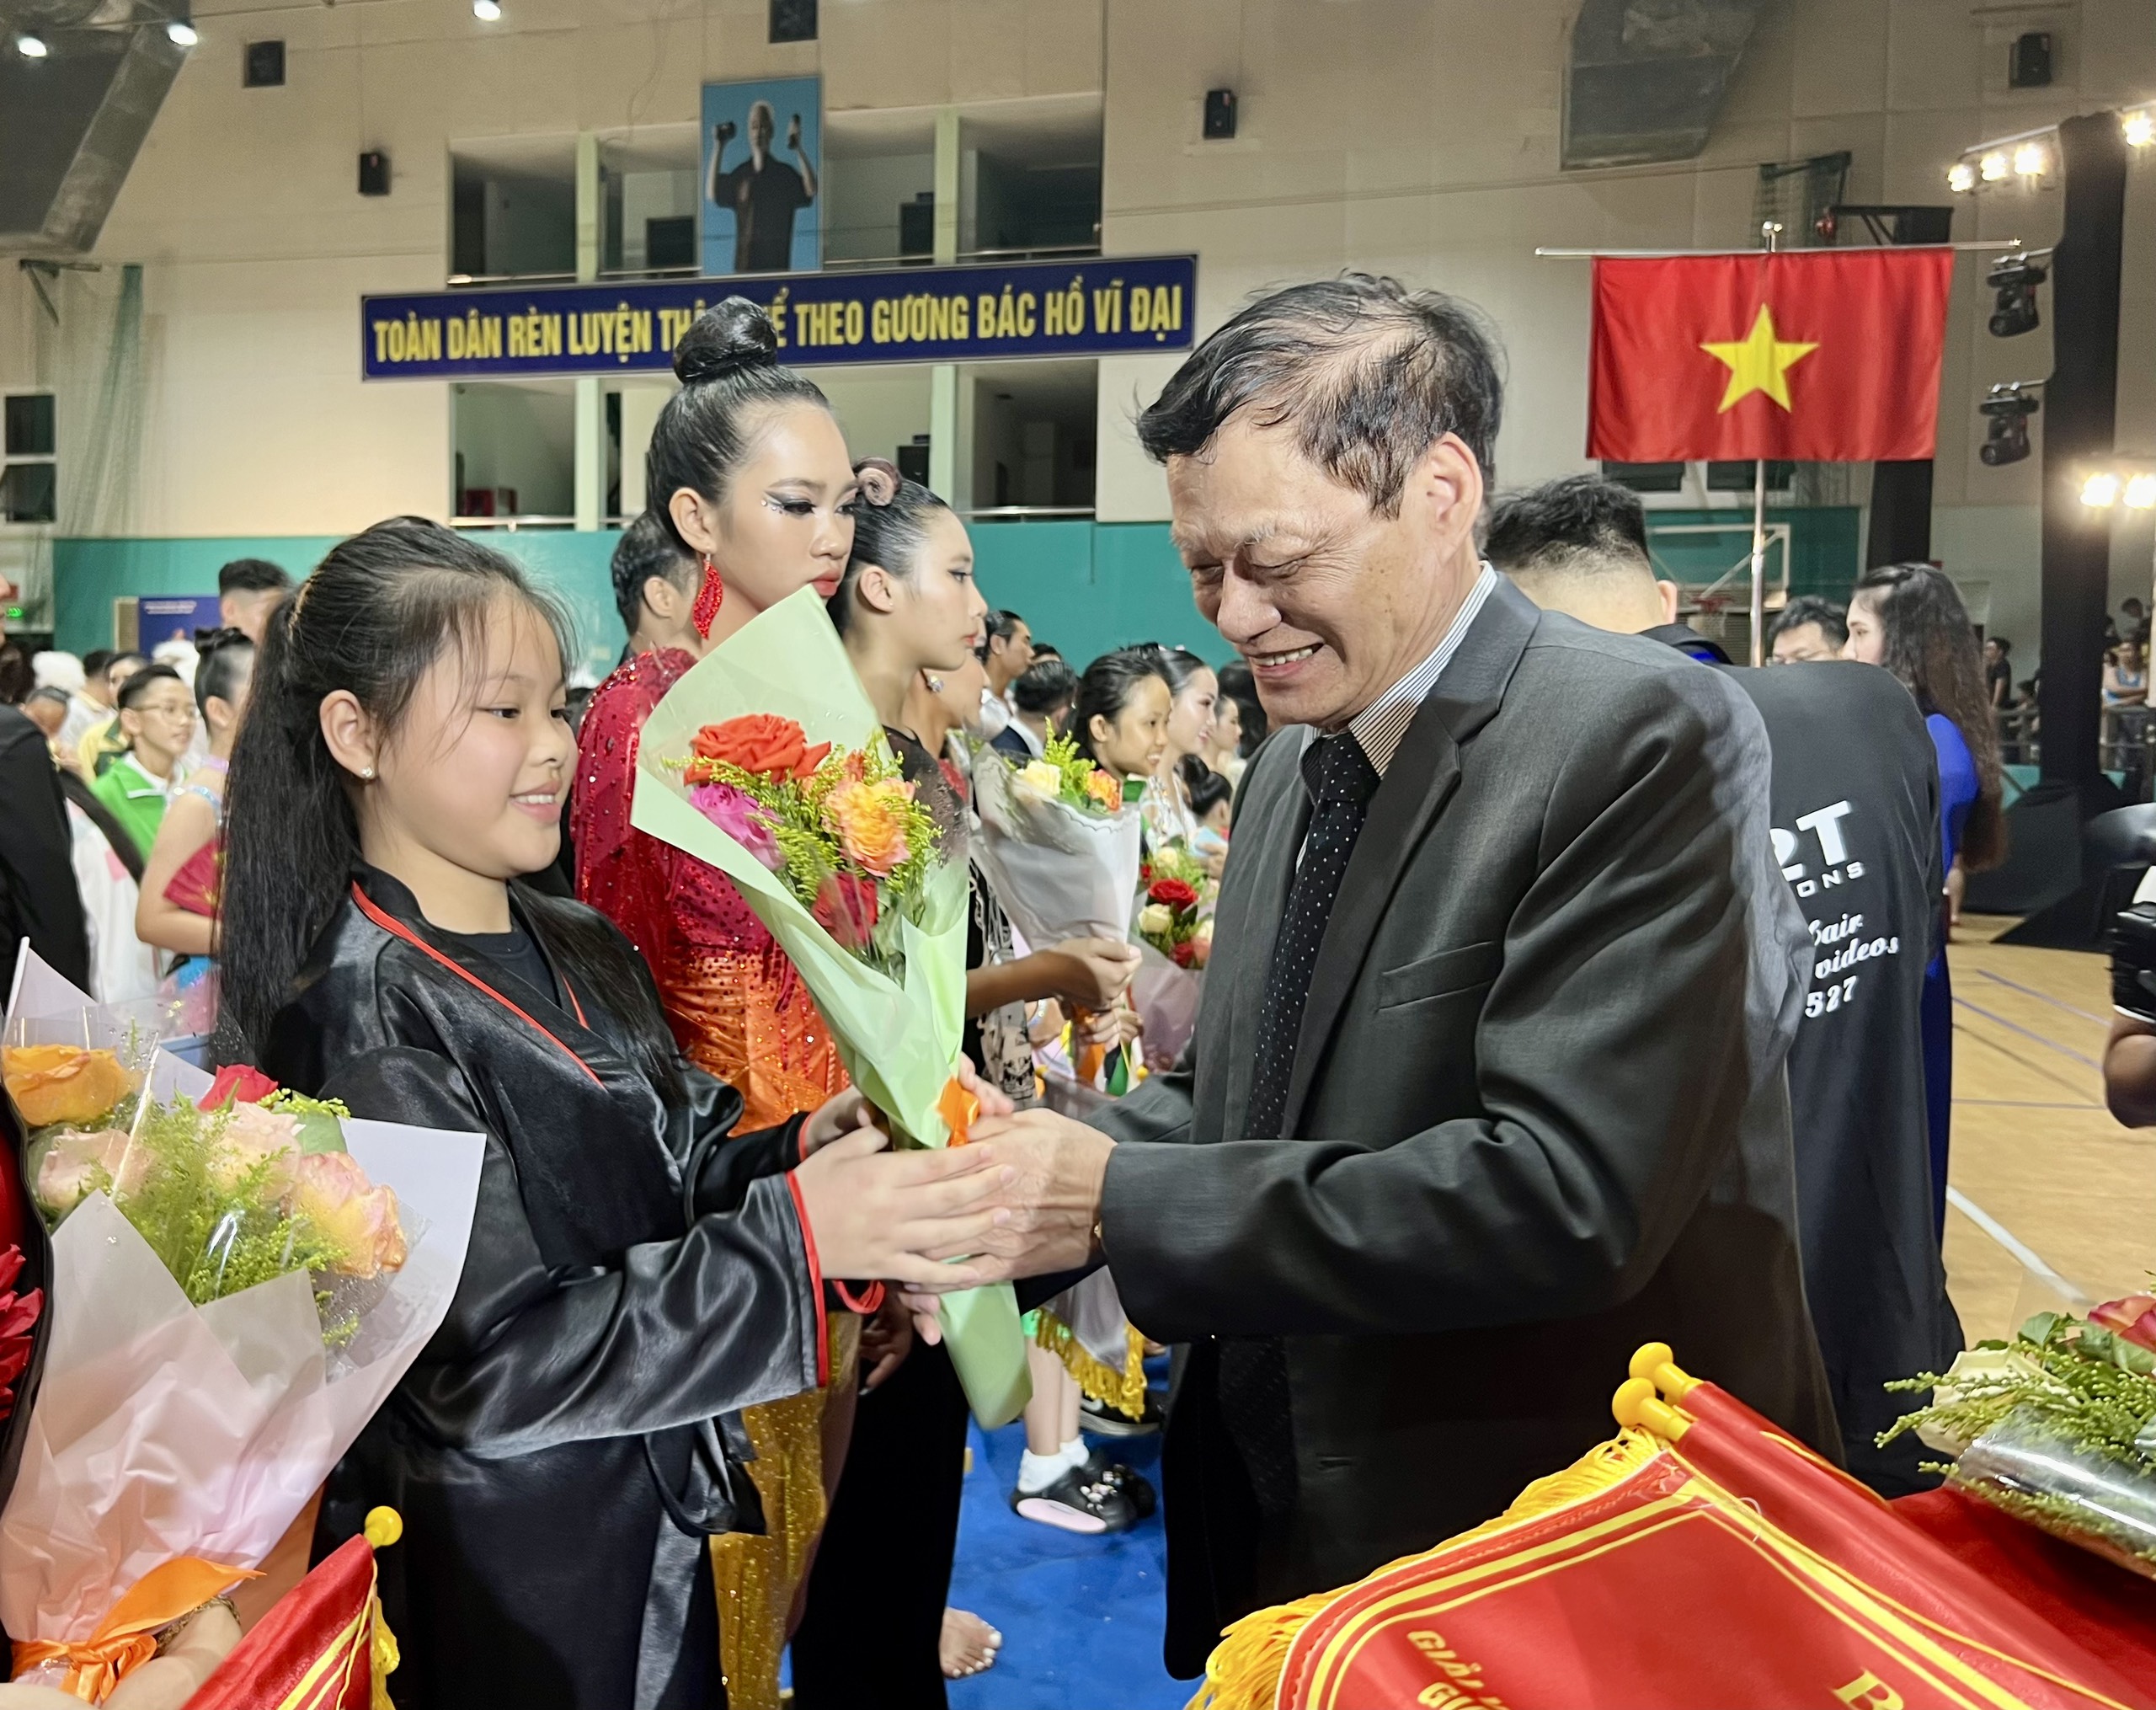 Ông Trần Chiến Thắng, Chủ tịch Liên đoàn thể dục Việt Nam, Nguyên Thứ trưởng Bộ VH-TT-DL trao cờ và hoa cho các đội tham gia.